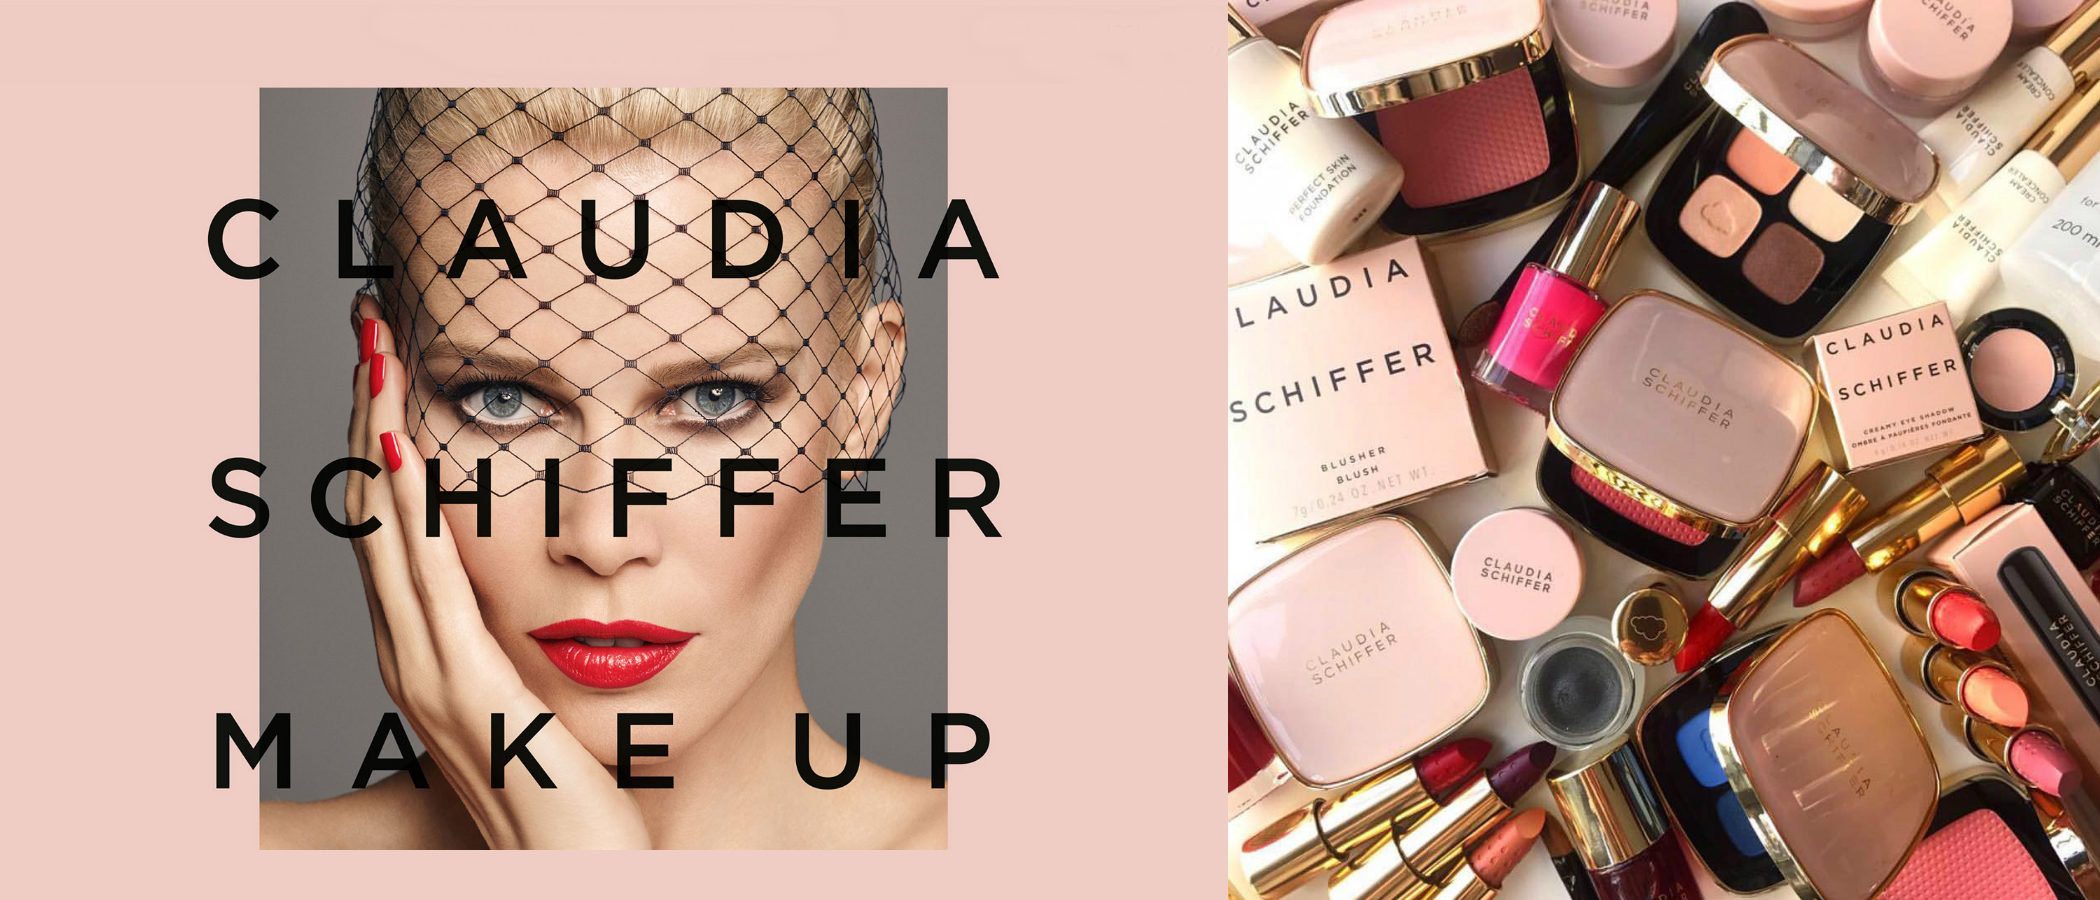 Claudia Schiffer lanza su primera colección de maquillaje en colaboración con Artdeco